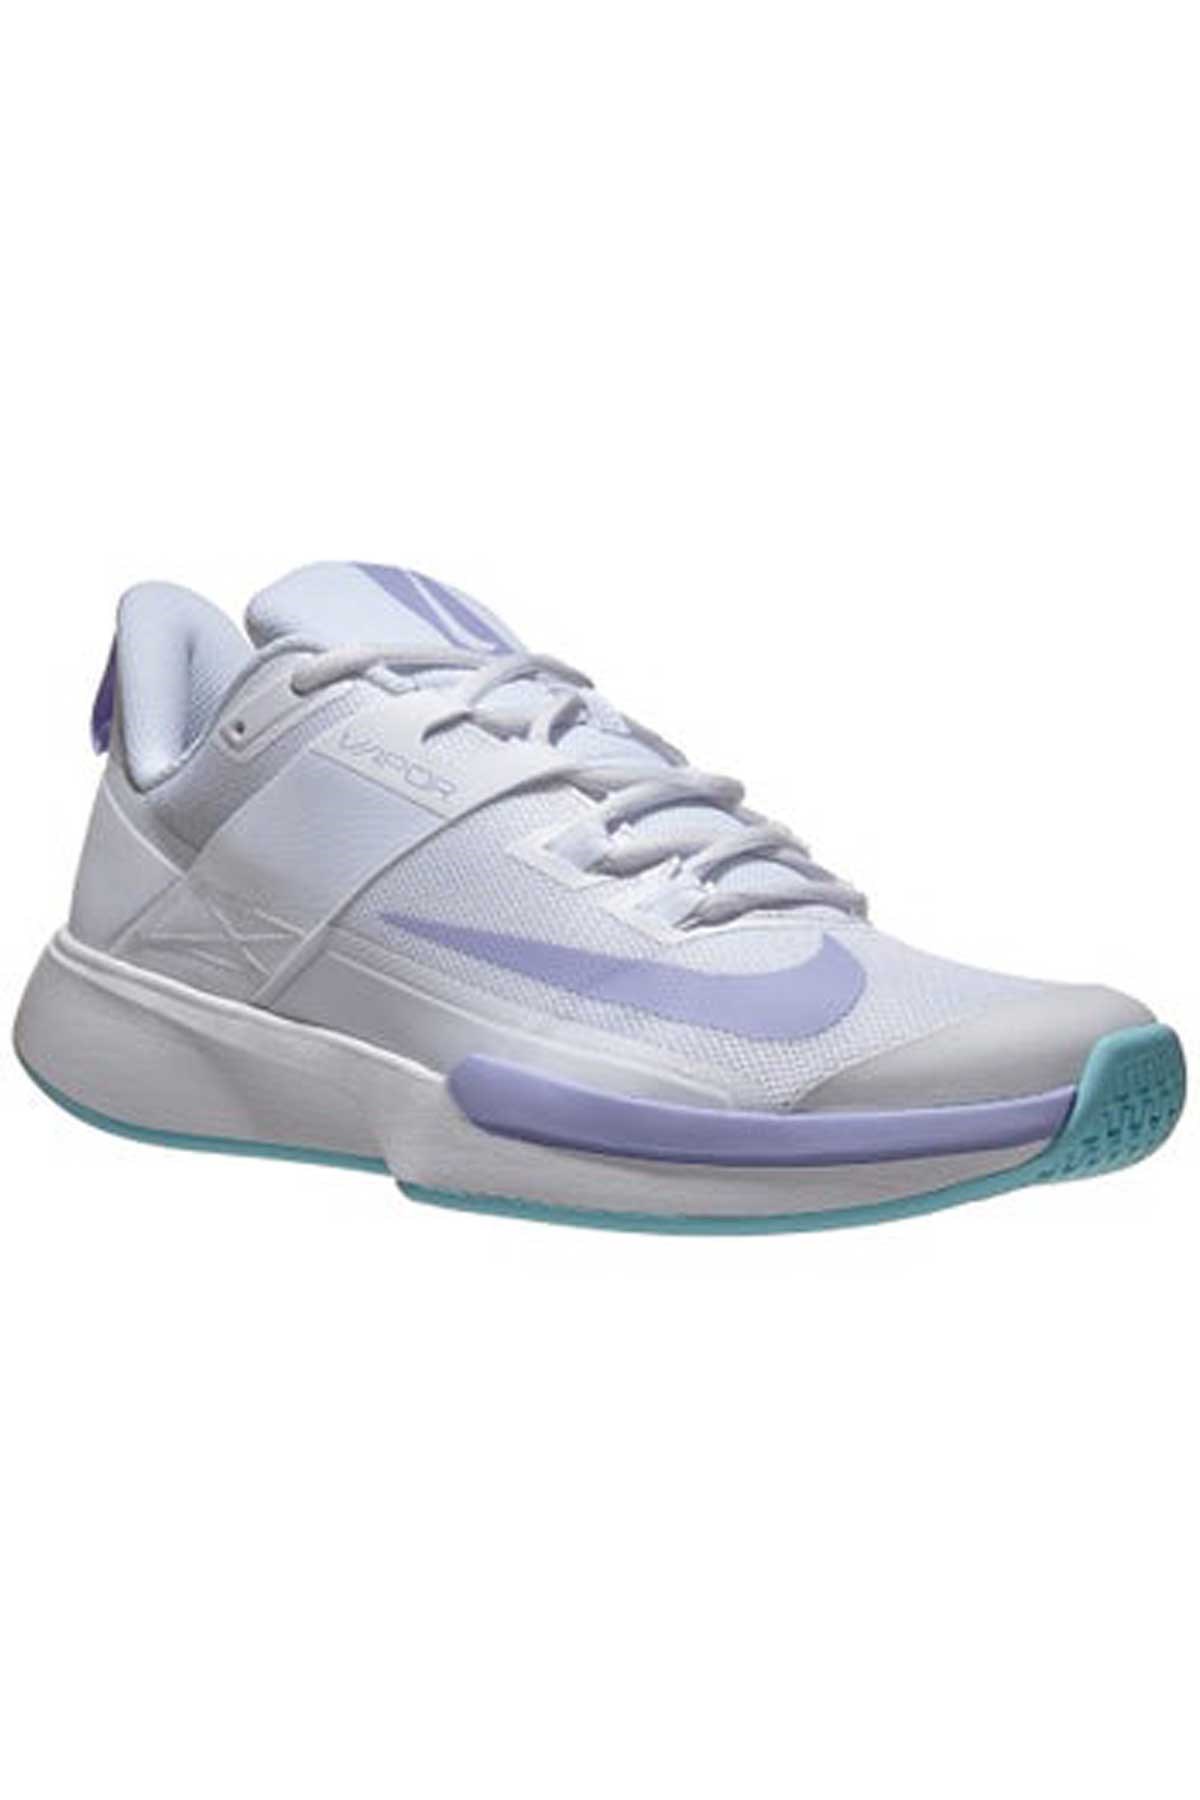 Nike Women Vapor Lite HC Beyaz-Lila Kadın Tenis Ayakkabısı